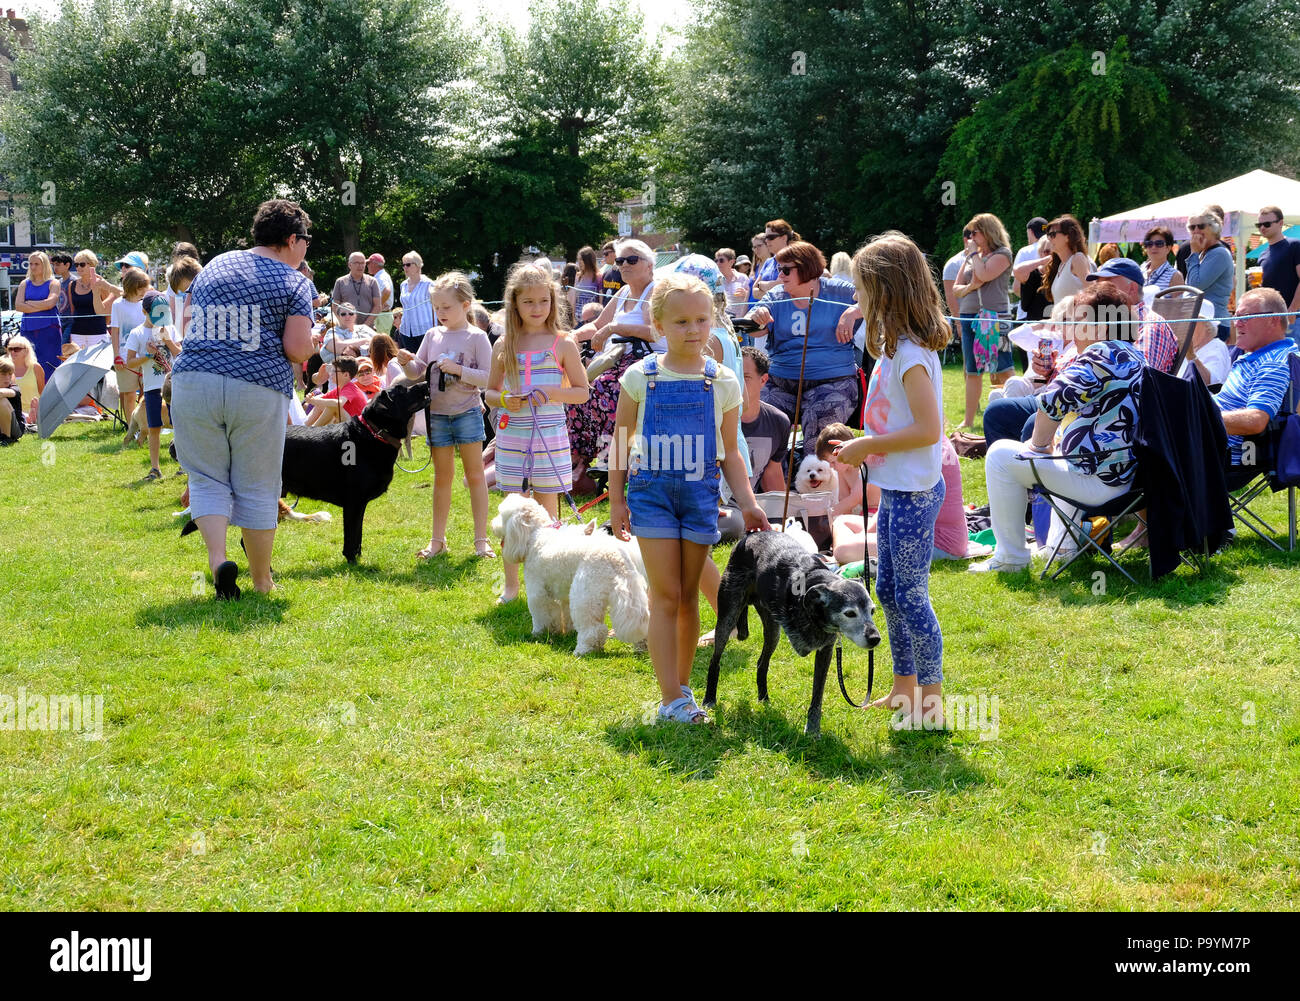 East Preston, West Sussex, UK. Fun dog show tenu le village vert - en attente pour les enfants de montrer leurs chiens de compagnie, y compris un vieux chien à trois pattes Banque D'Images